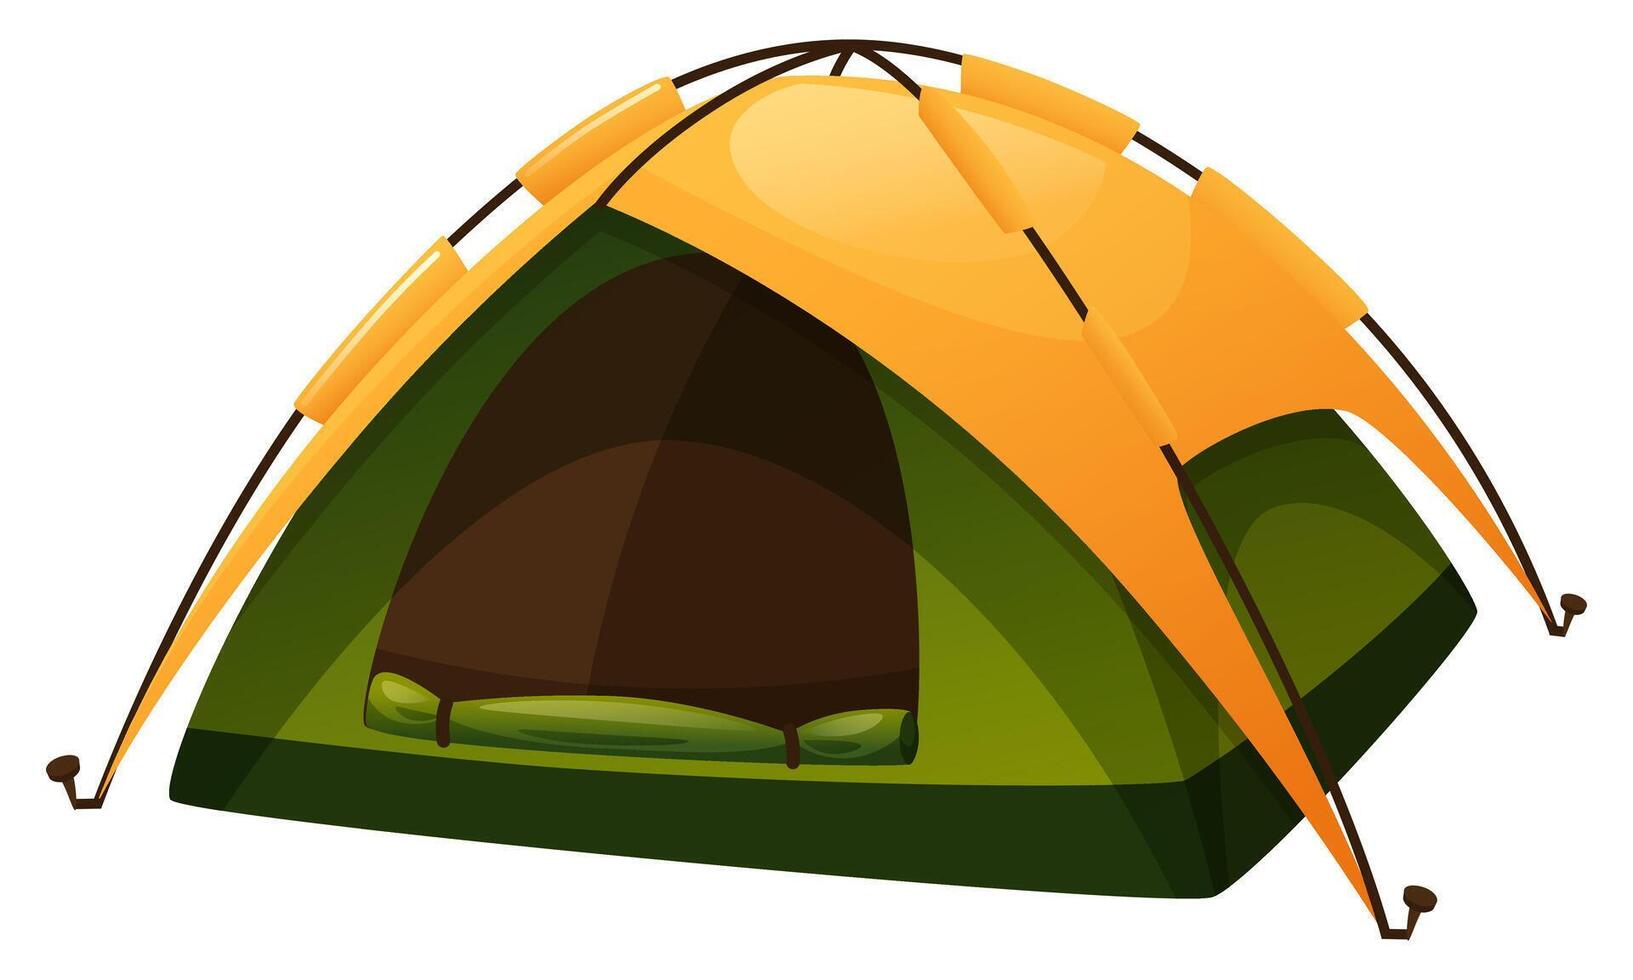 vector illustratie van een tent voor camping, expeditie, zomer kamp. de tent is in groen en geel, Open en ontvouwd. tent voor hiking, vissen, jacht- Aan een wit achtergrond. wandelen apparatuur.